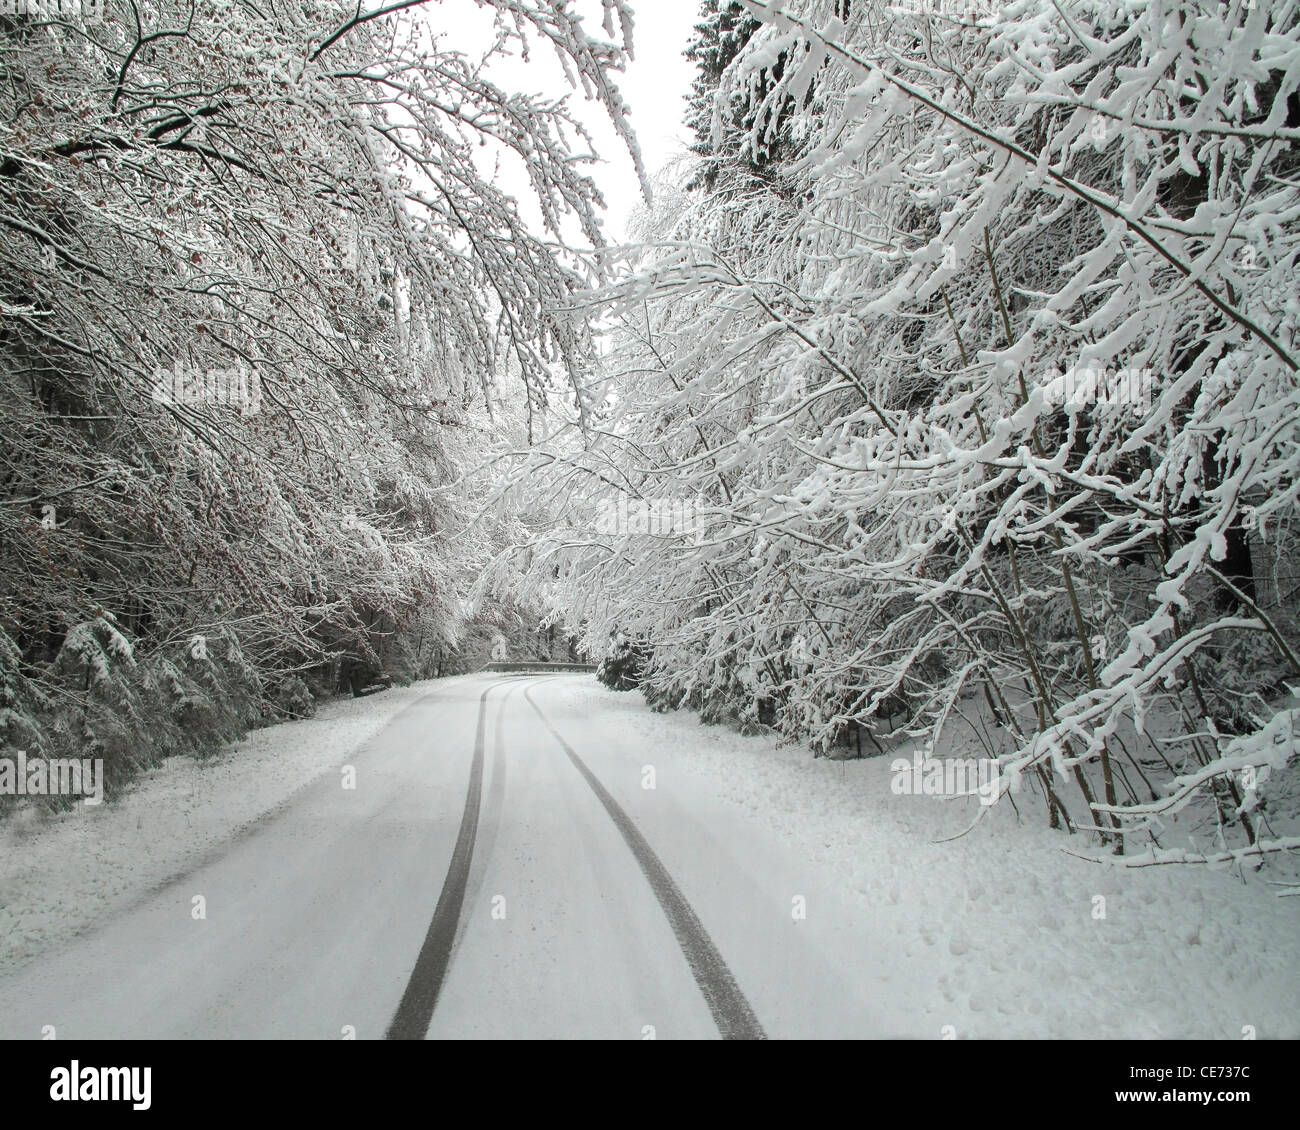 DE - Bayern: Fahren unter winterlichen Bedingungen Stockfoto